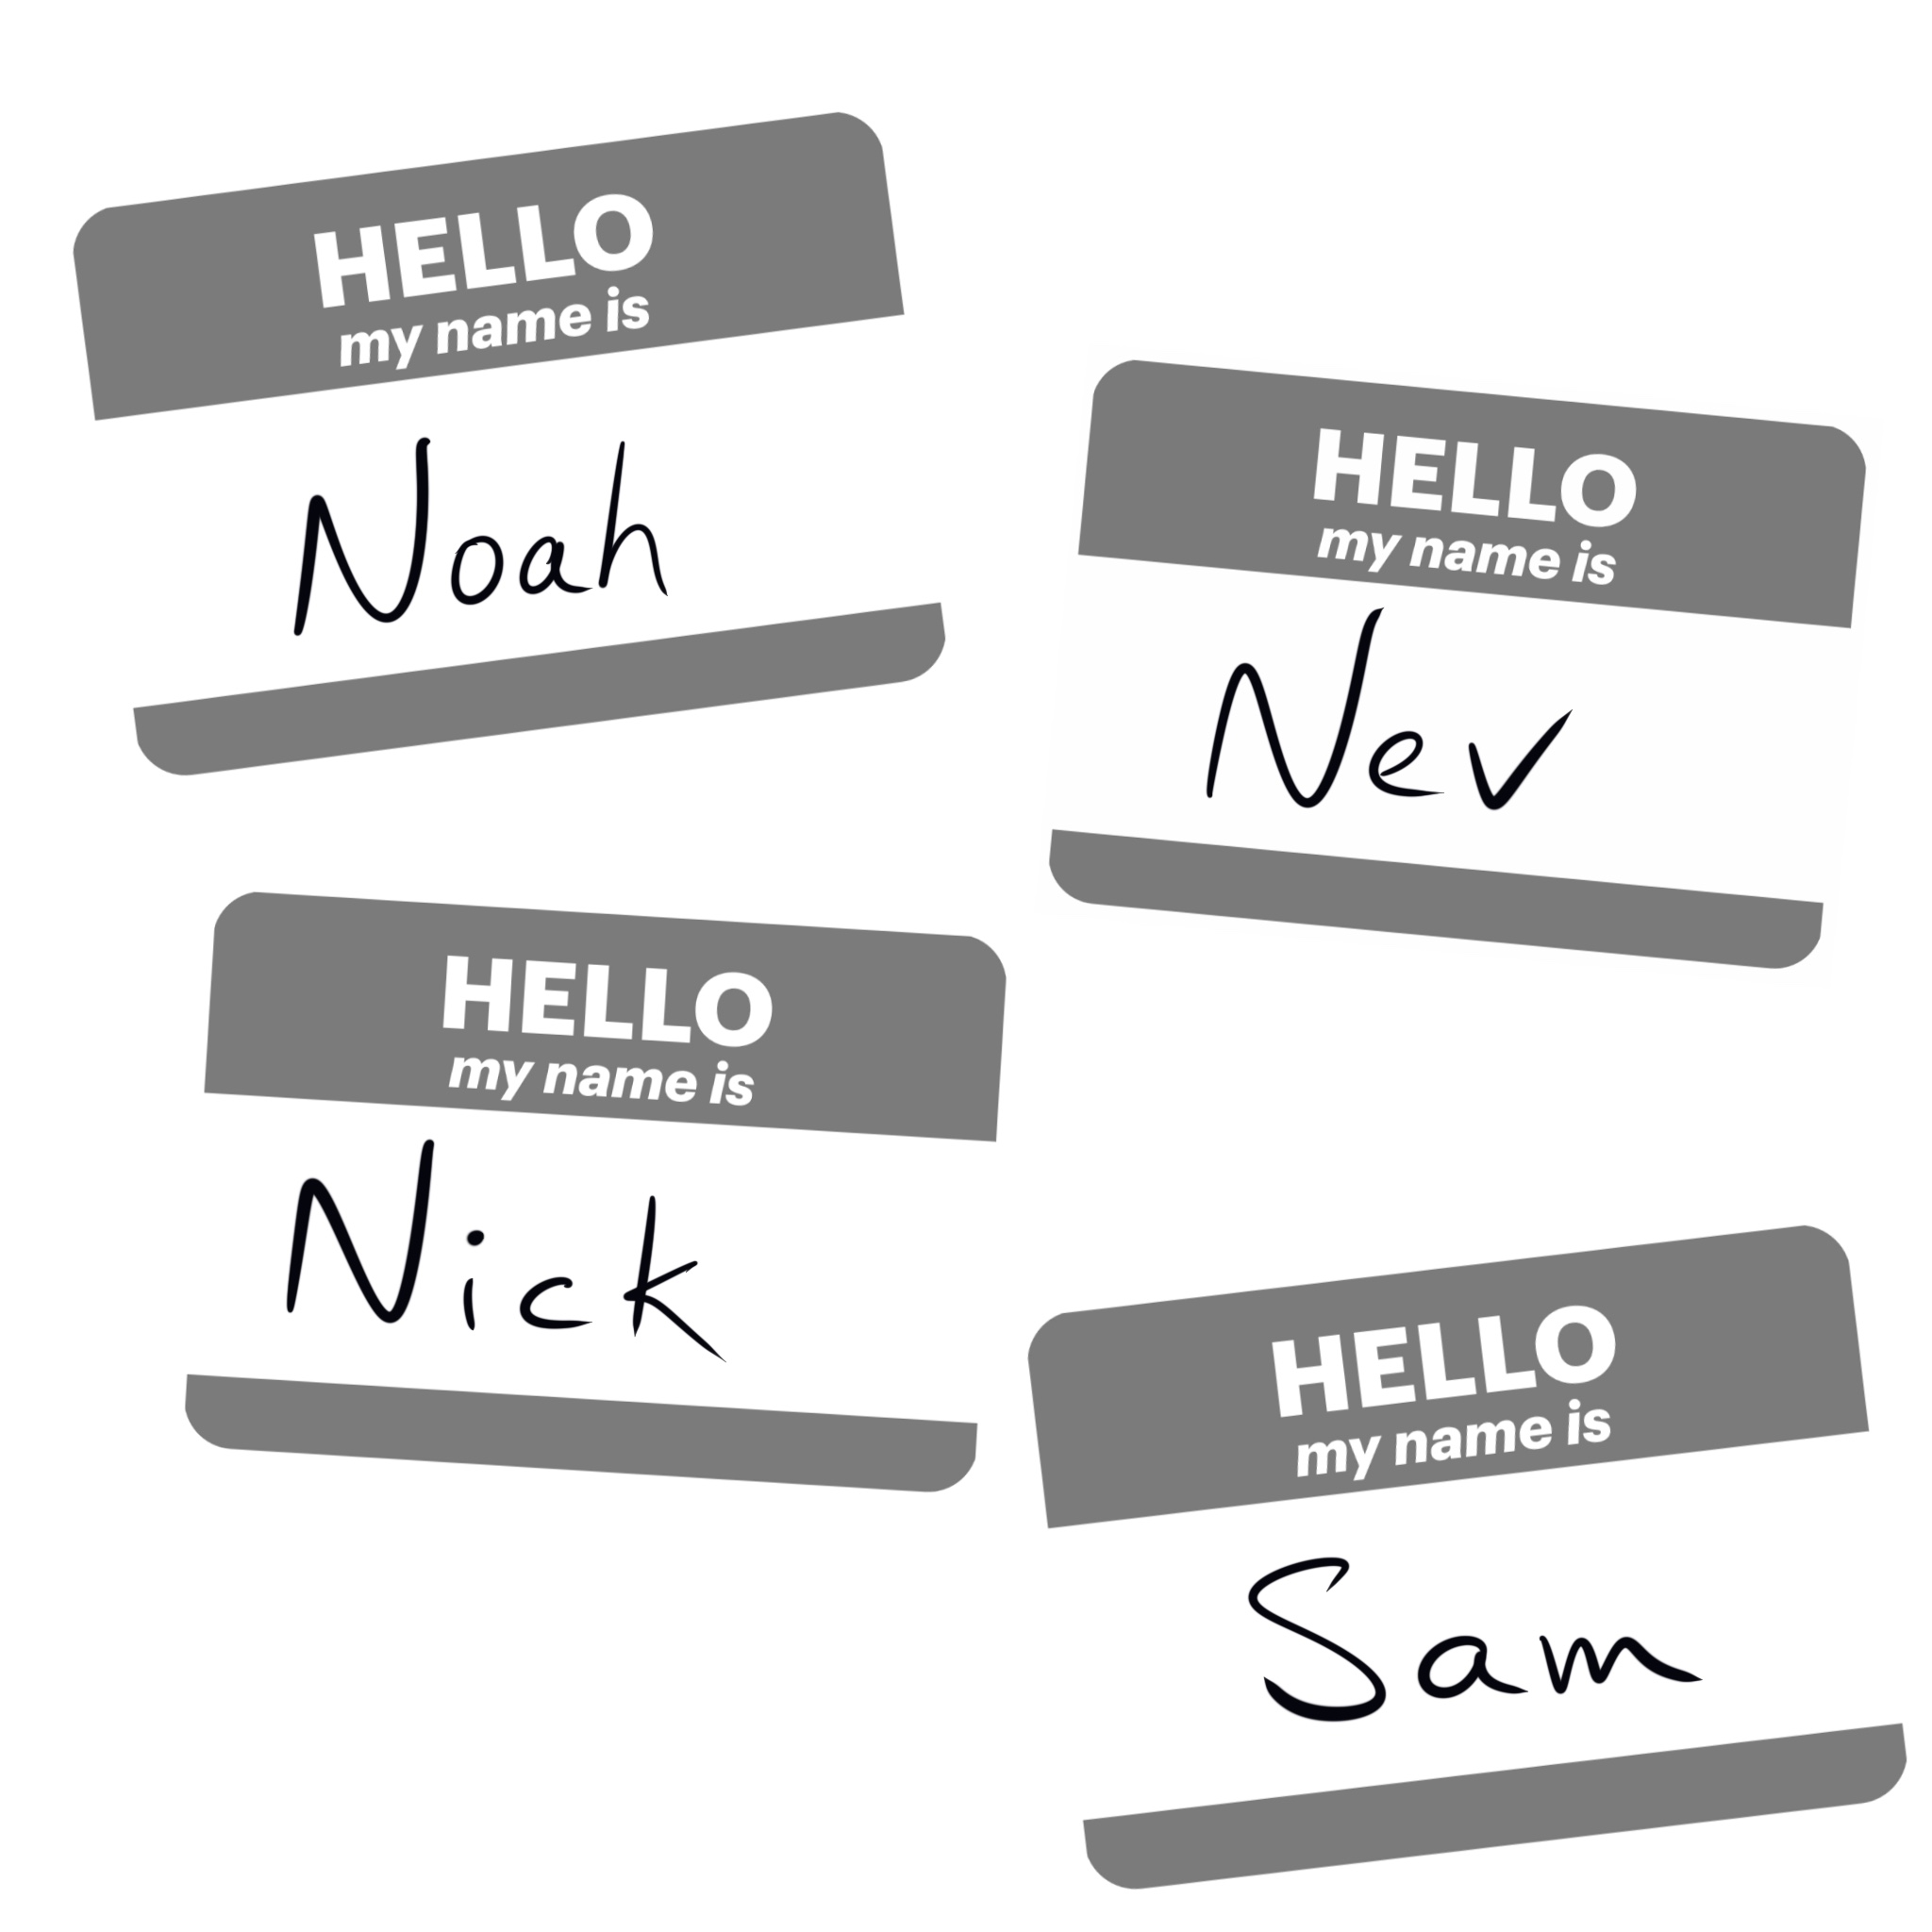 4 name tags saying Noah, Nev, Nick, and Sam